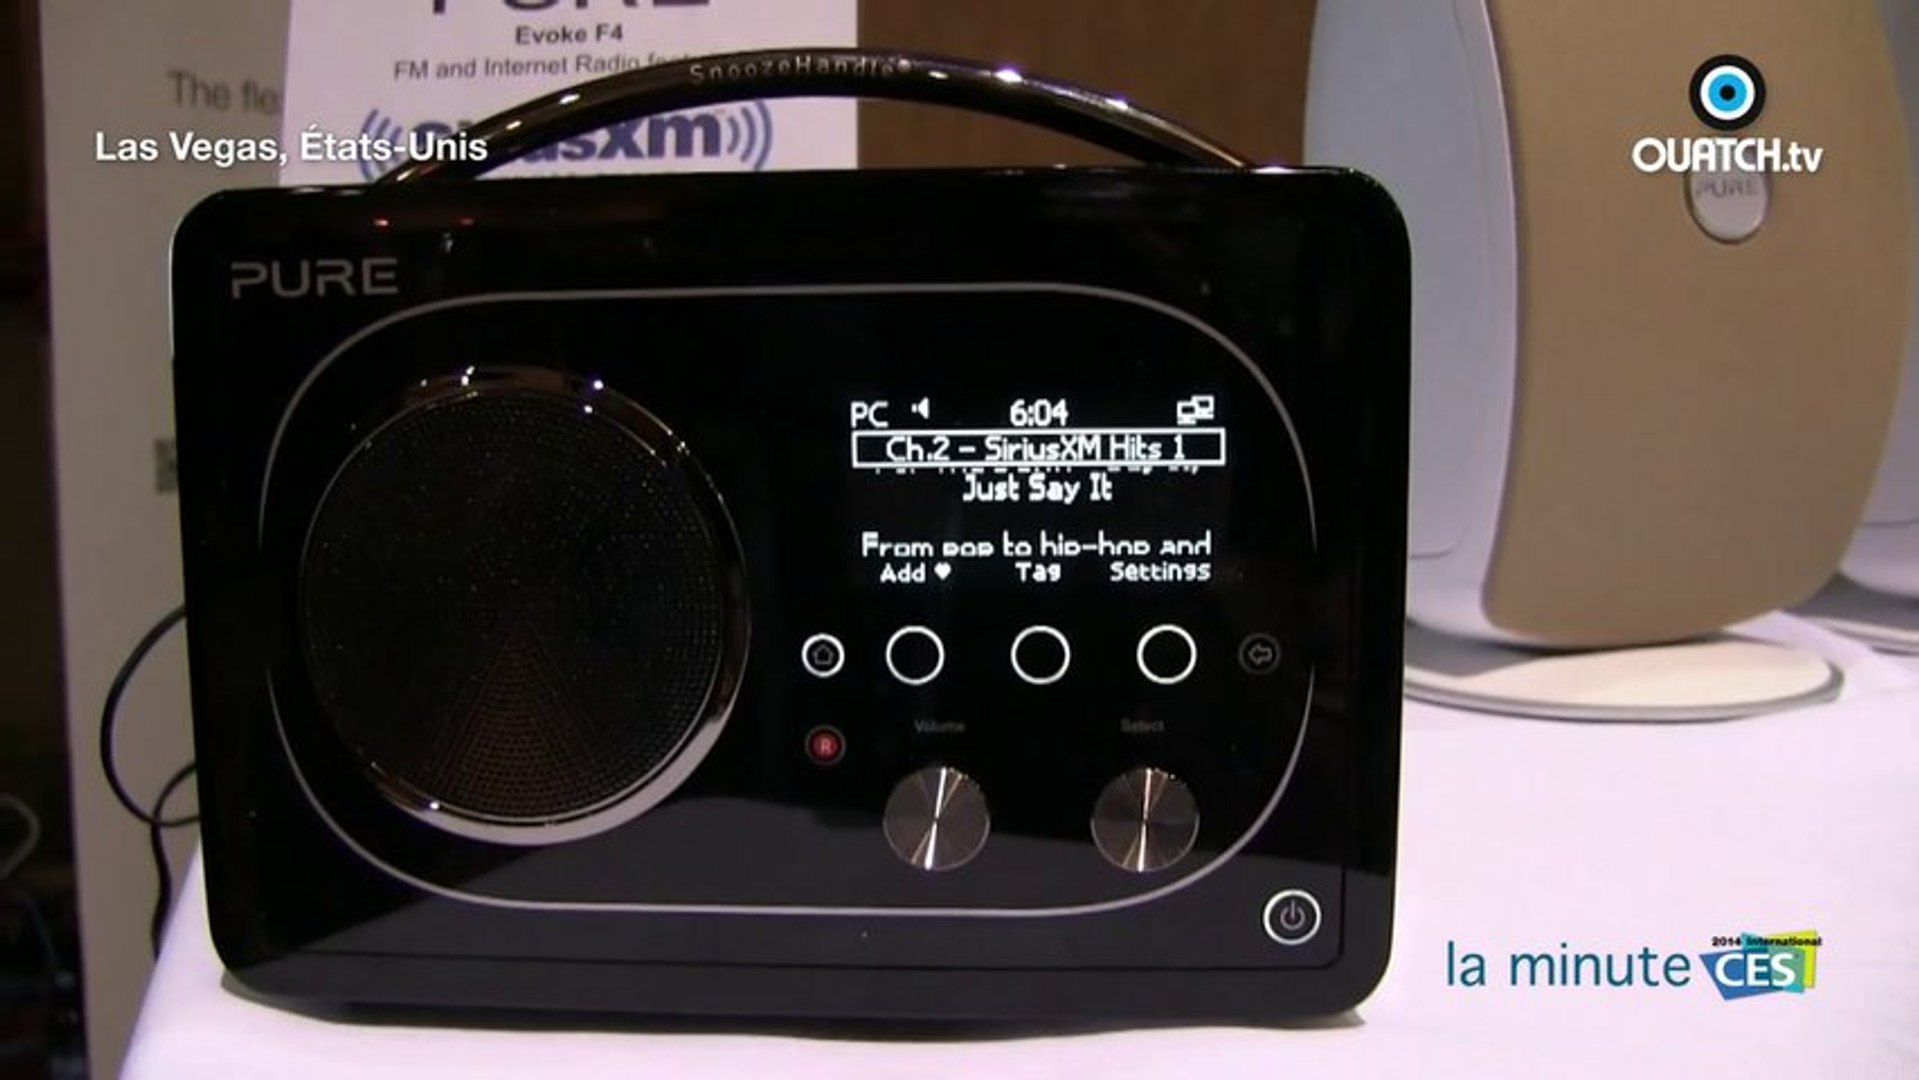 la minute CES S01E01 : Ecouteurs sans fil Bluetooth-Wifi et radio Internet  Evoke F4 (Pure) - Vidéo Dailymotion